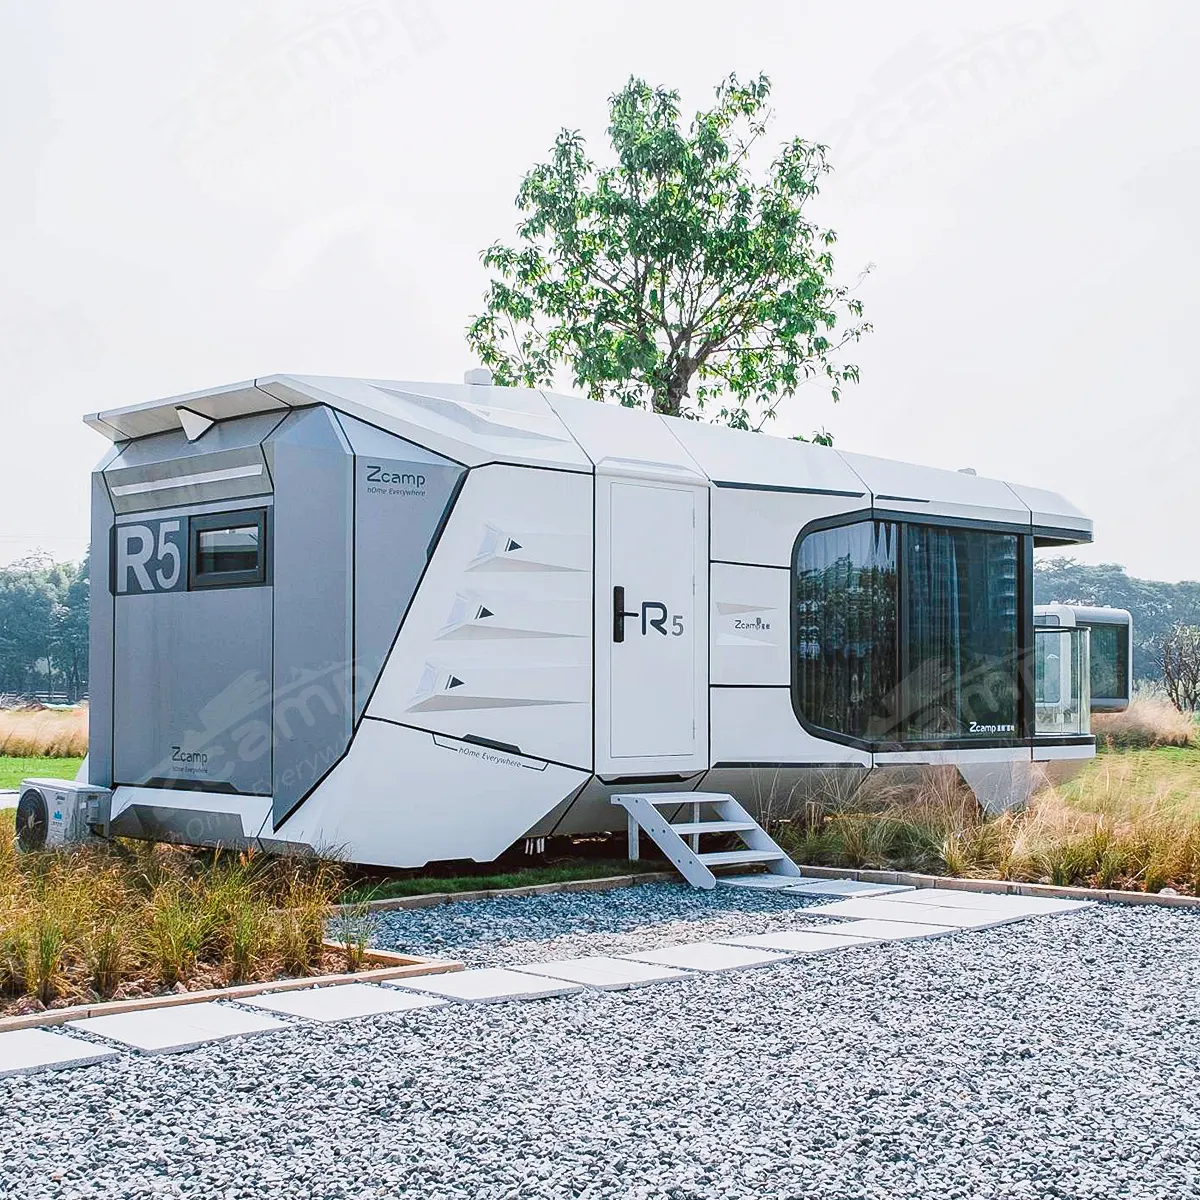 Zcamp H5 petite maison extensible portable camping luxe camping moderne modulaire facile à assembler maison préfabriquée mini maison maison maison